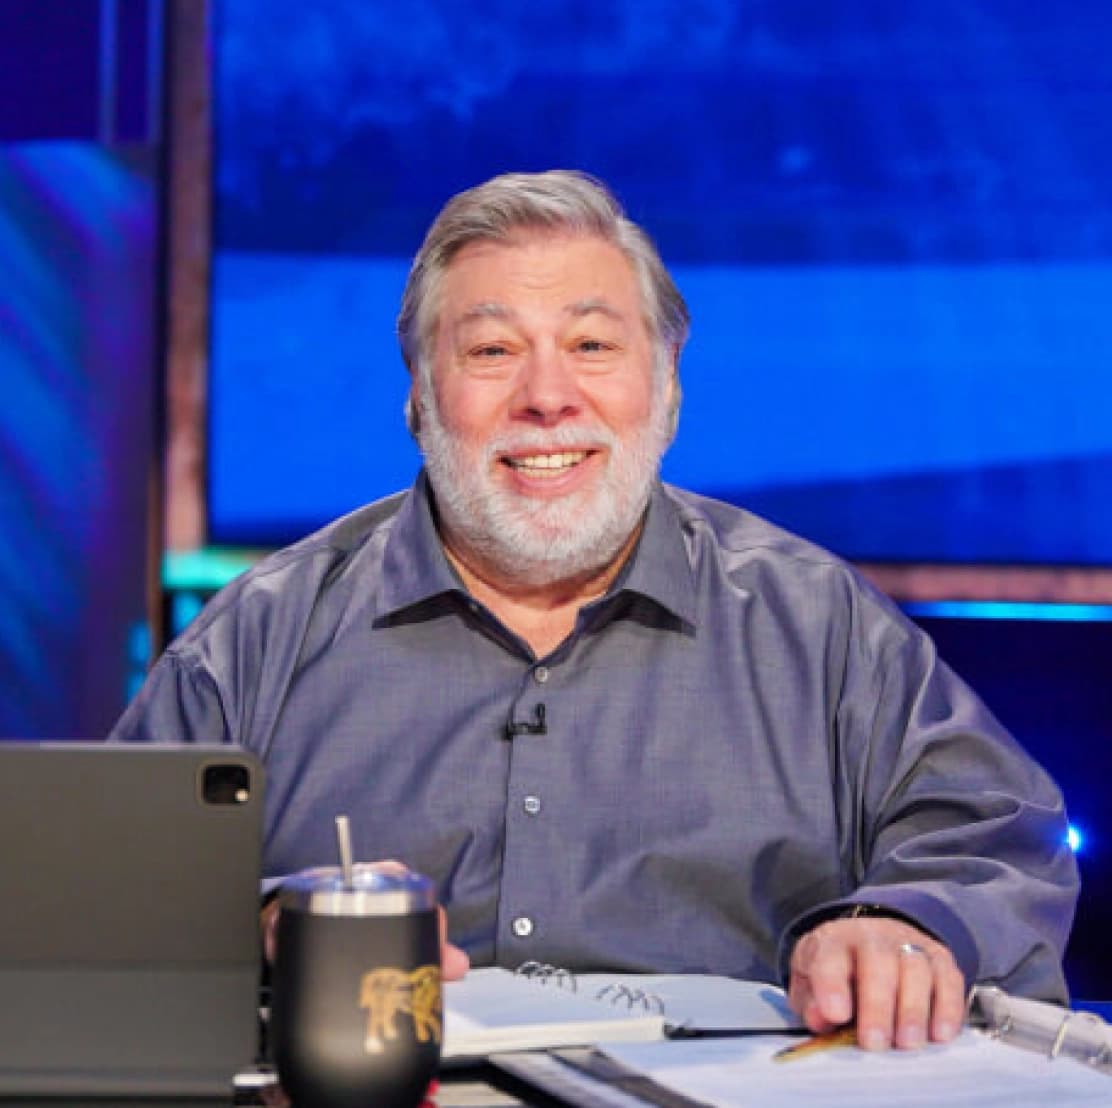 Judges - Steve Wozniak